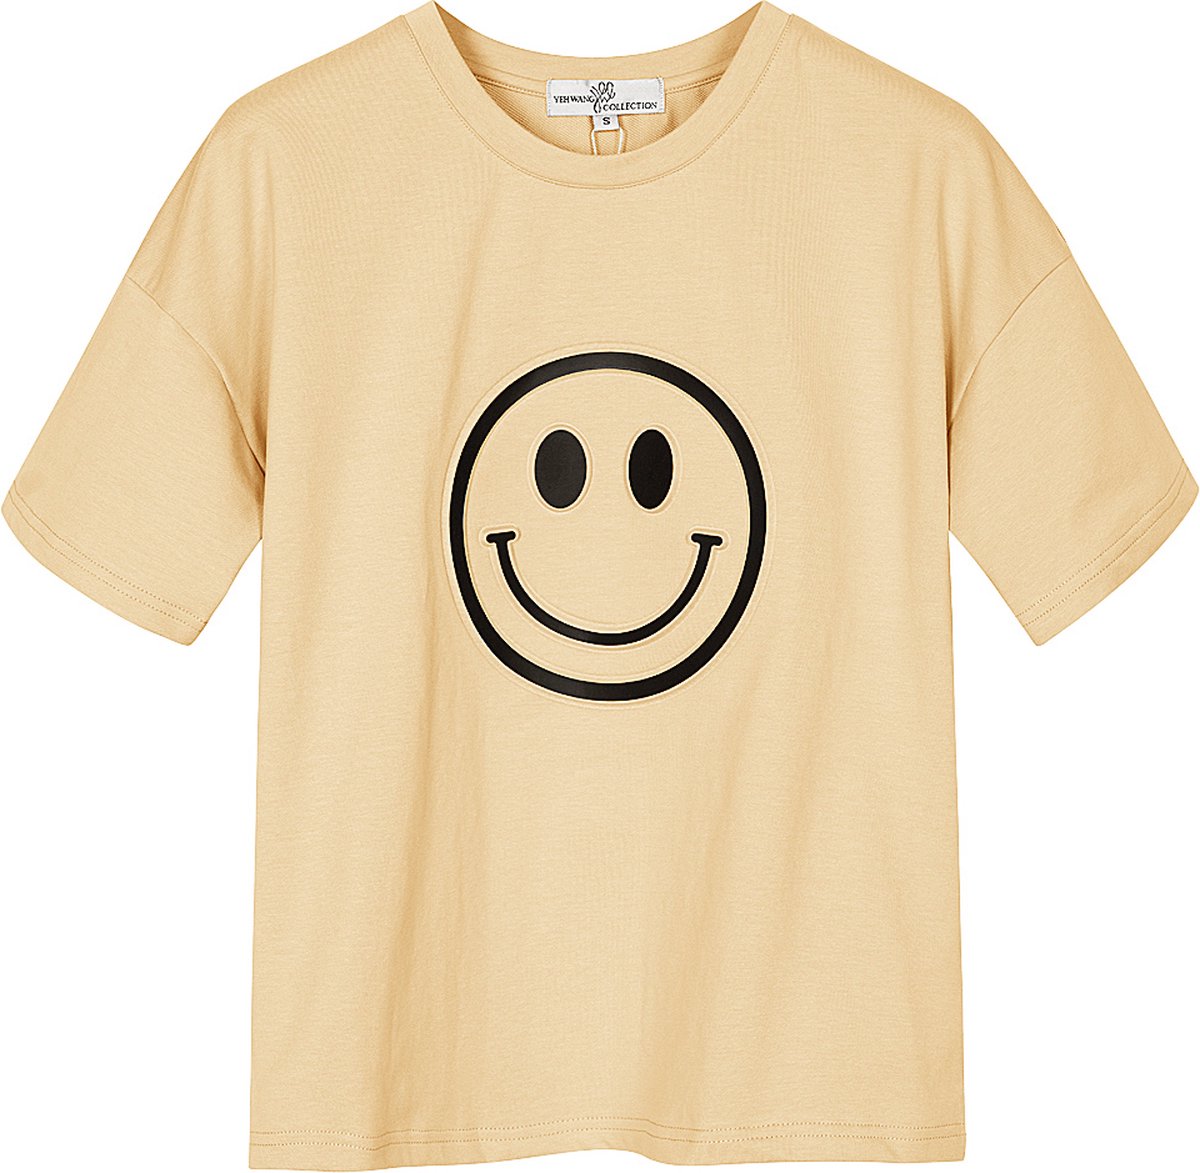 Yehwang - T-shirt met smiley - Crème - Maat: S